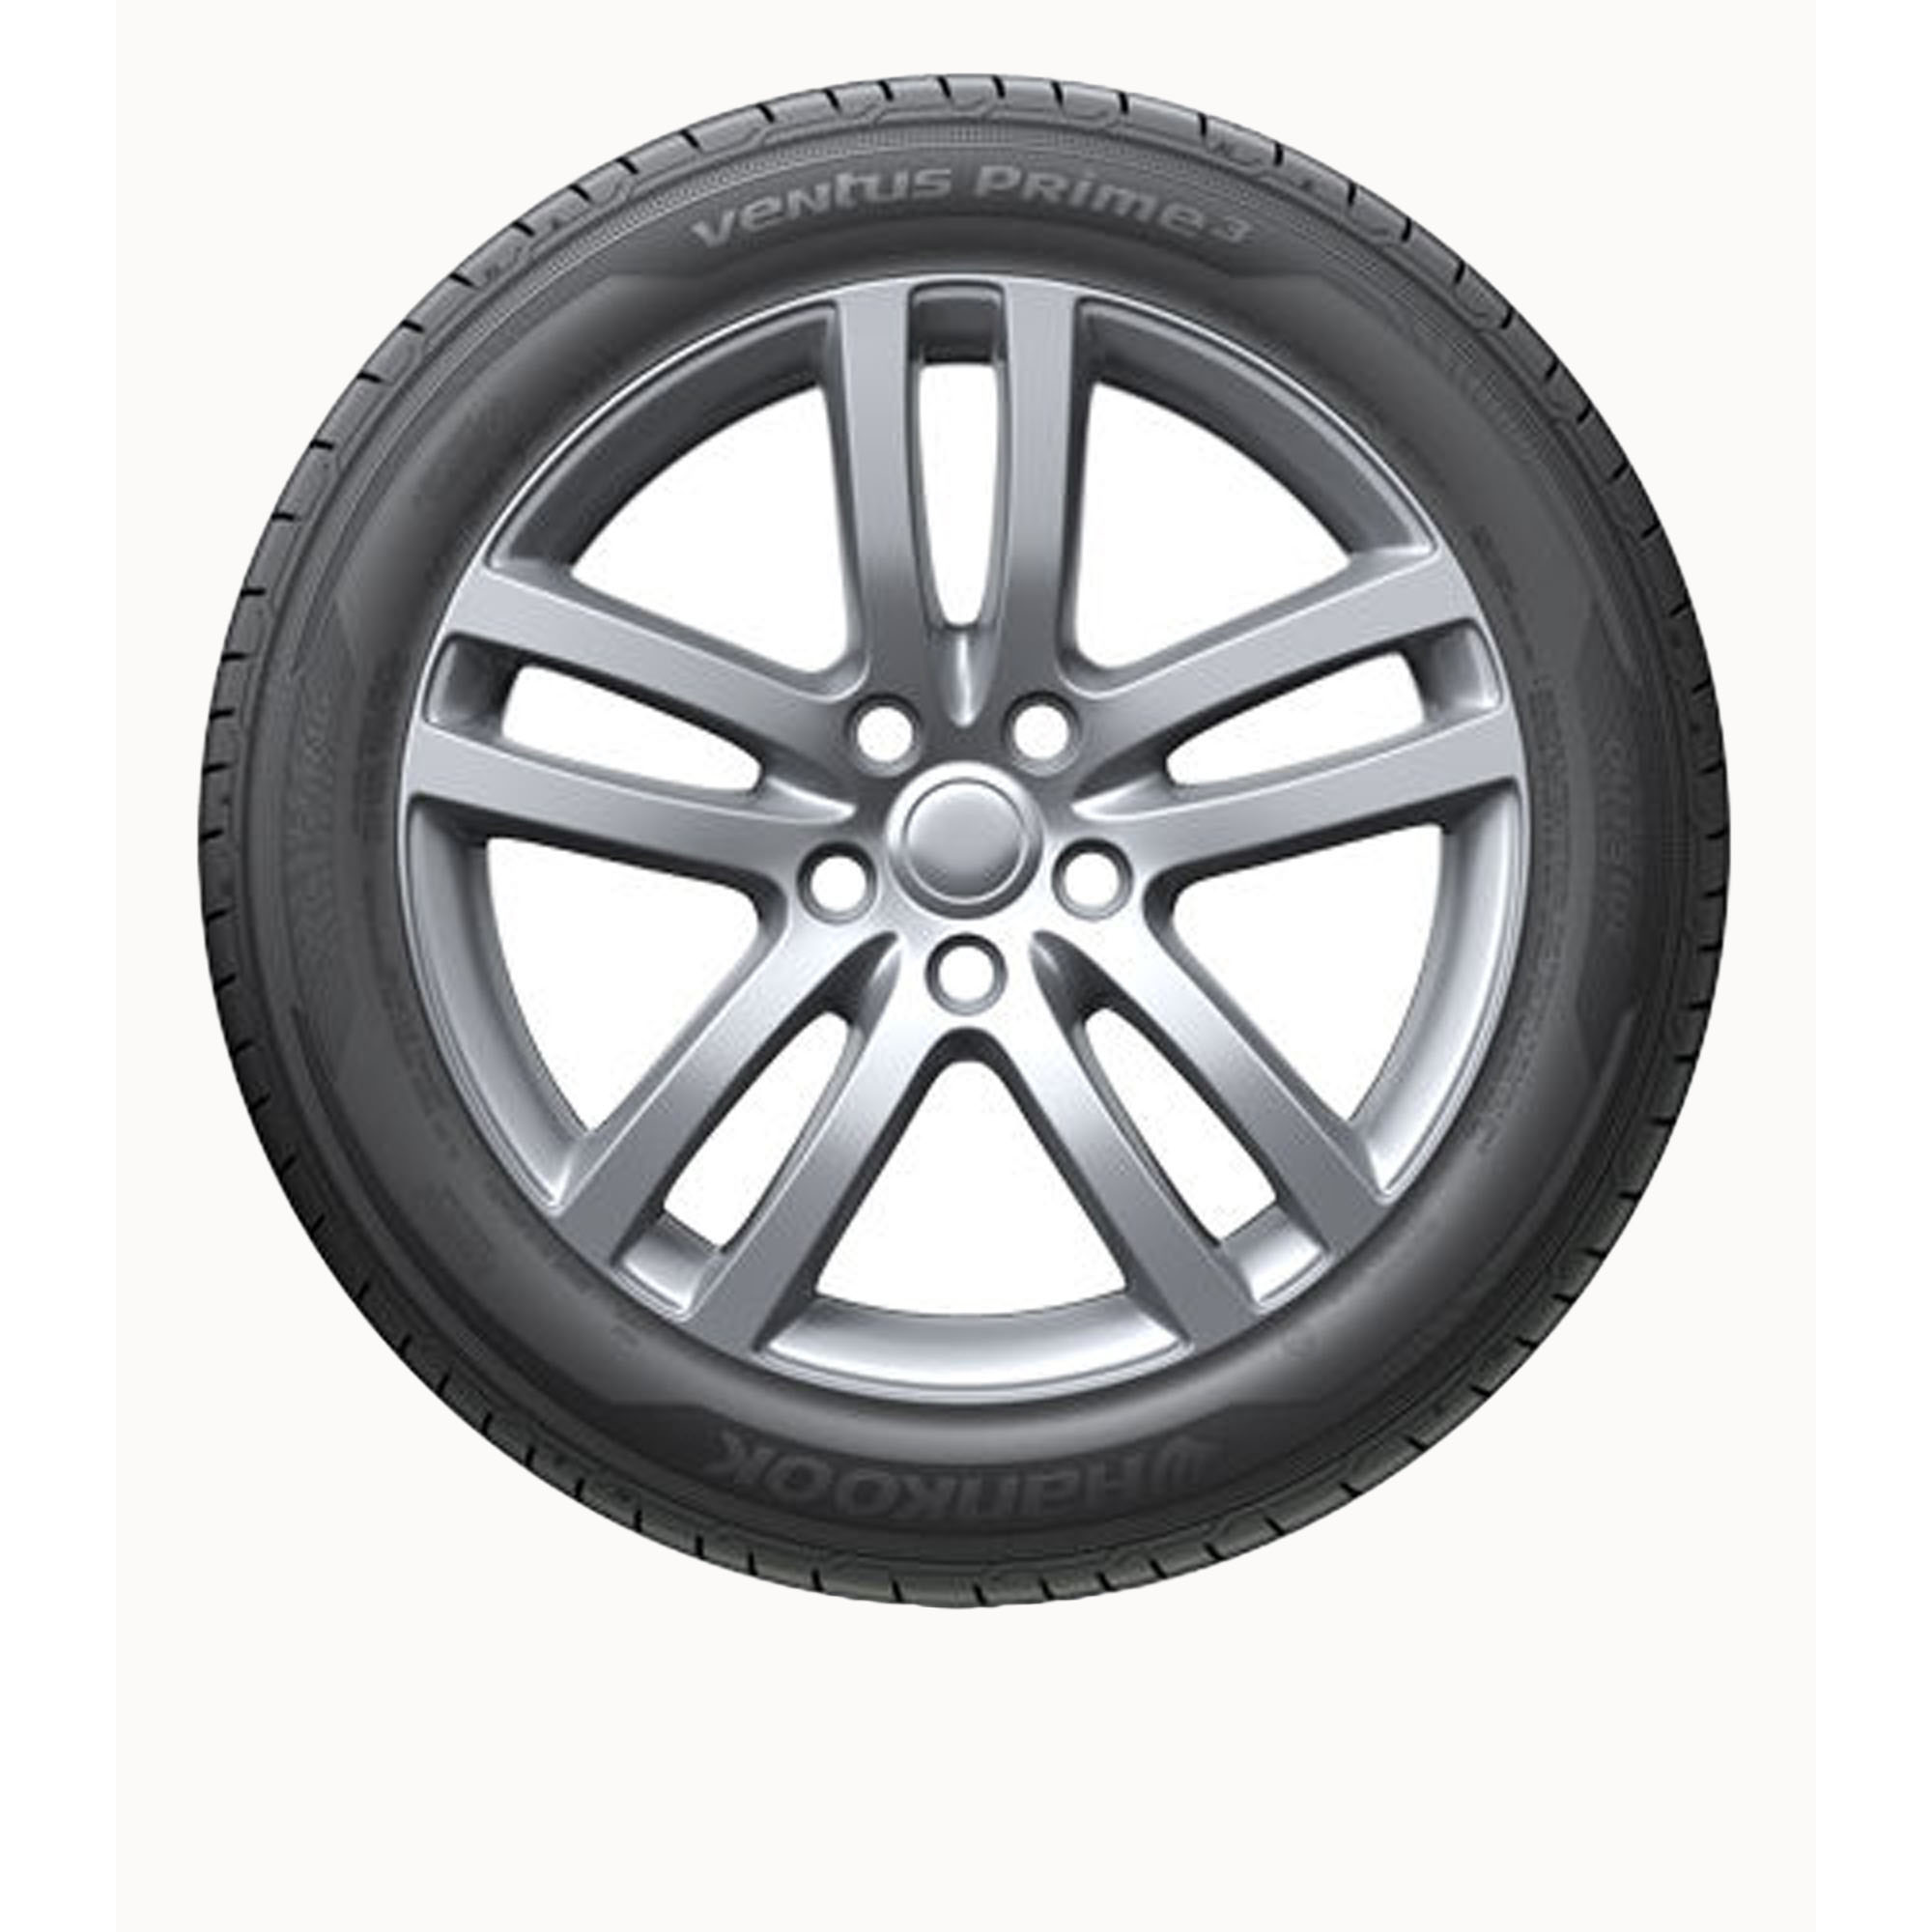 1 New Hankook Ventus 55 eBay (k125) | Tires 1955516 Prime3 - 195/55r16 195 16